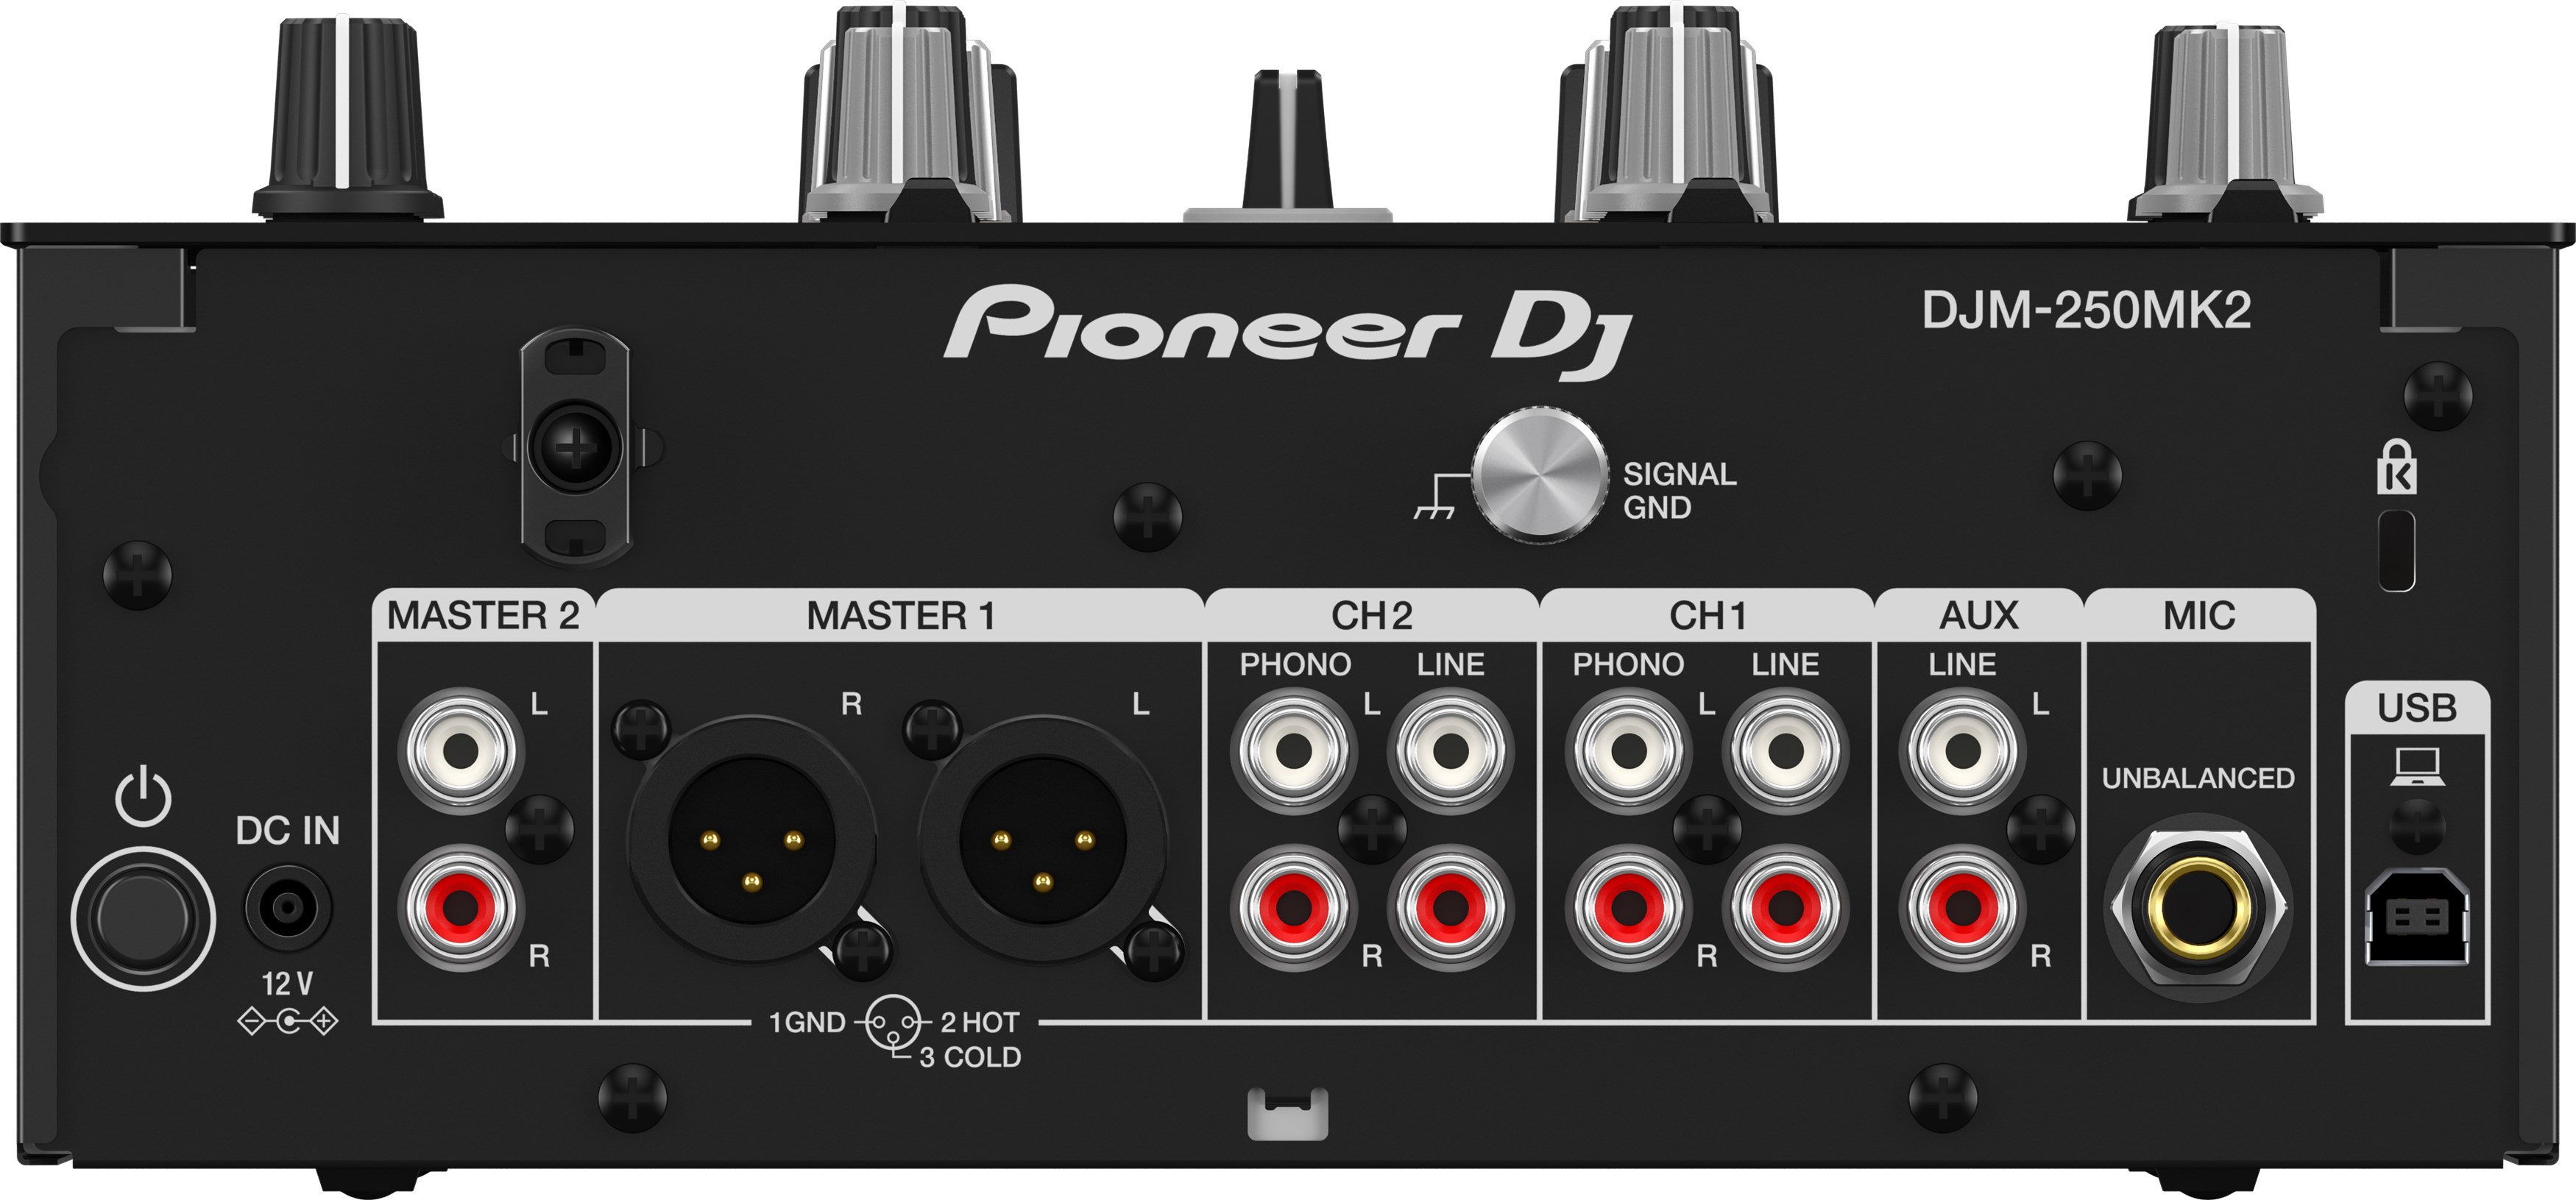 Pioneer Dj Djm-250mk2 - DJ-Mixer - Variation 1